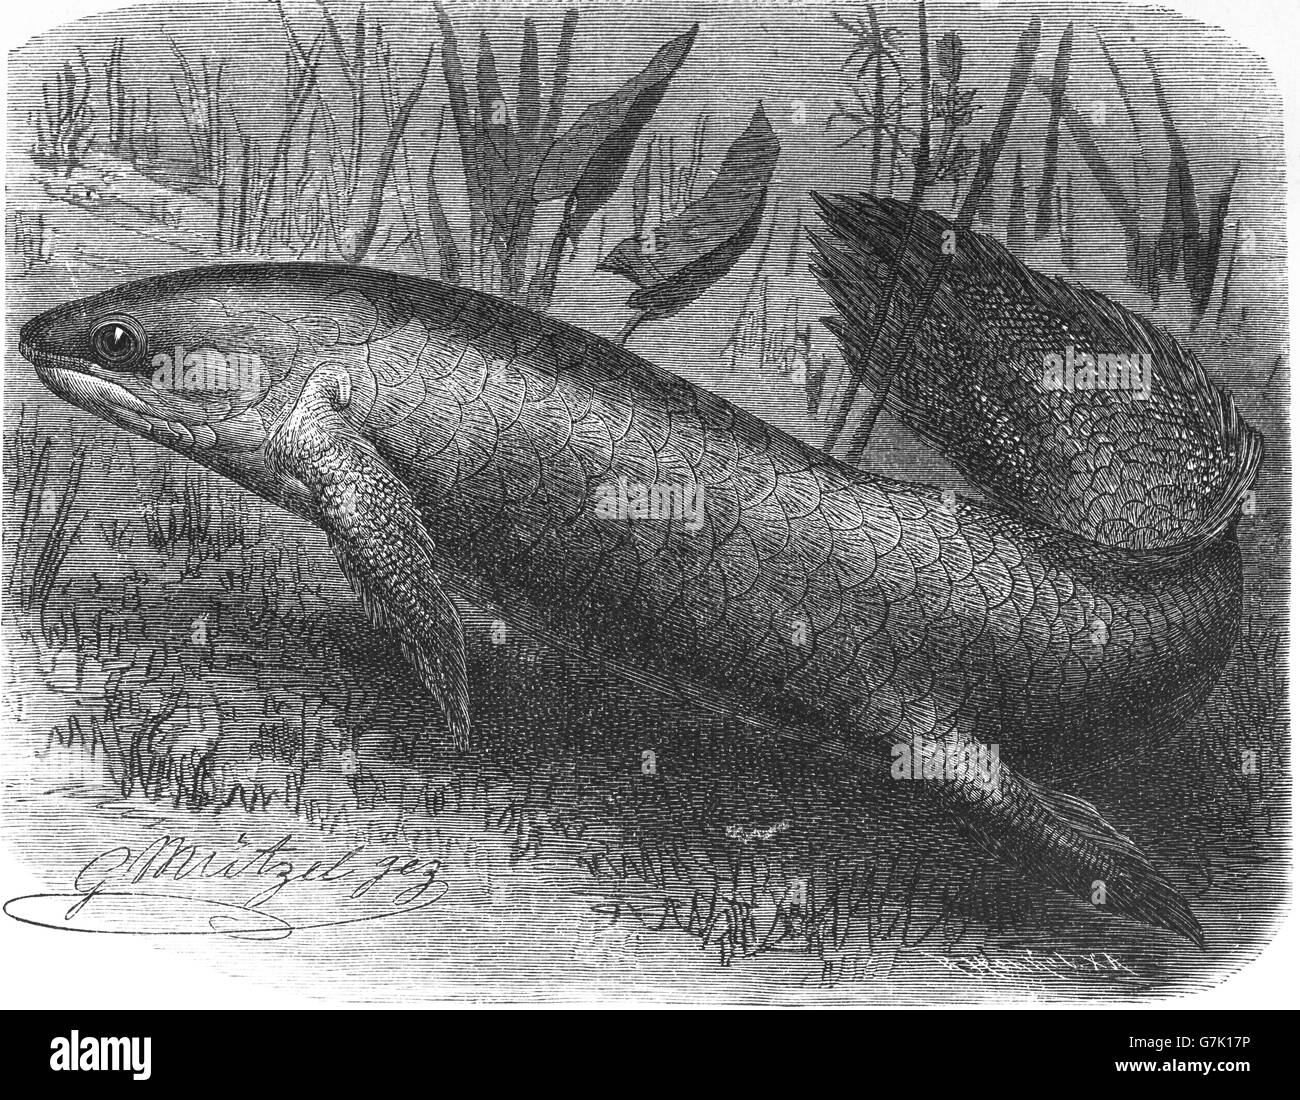 Dipneuste Neoceratodus forsteri, Queensland, Australie dipneustes, Burnett saumon, barramunda, illustration de livre daté 1904 Banque D'Images